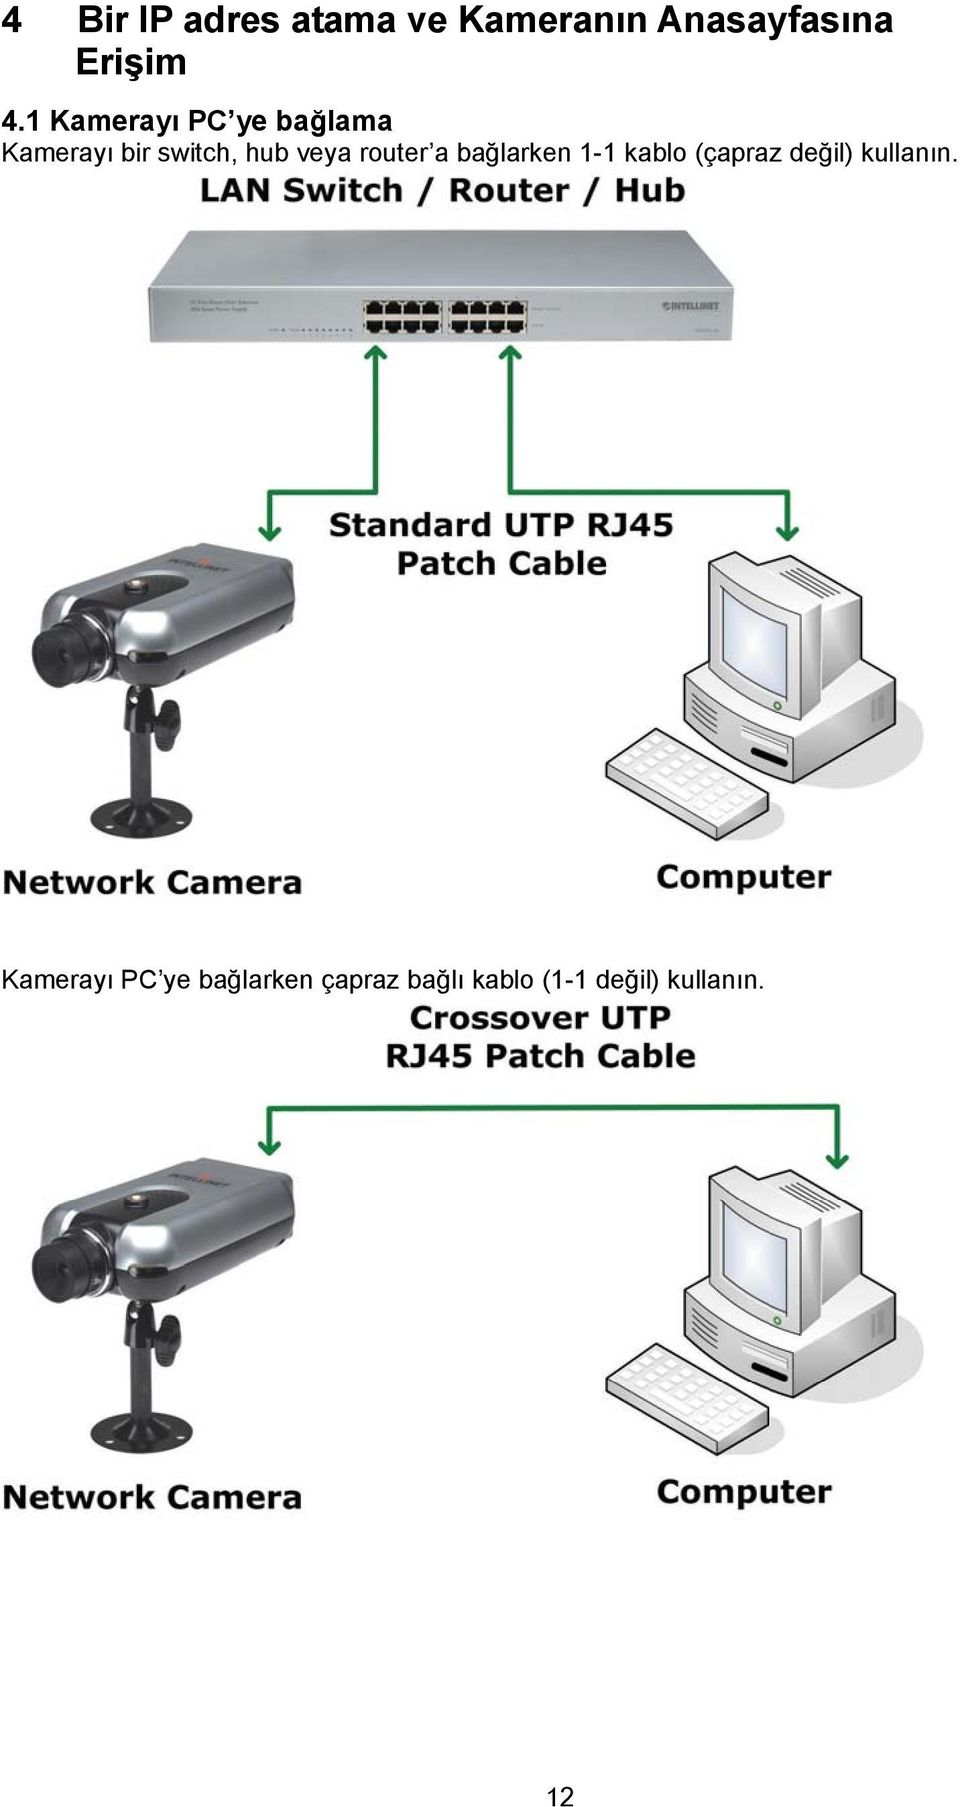 router a bağlarken 1-1 kablo (çapraz değil) kullanın.